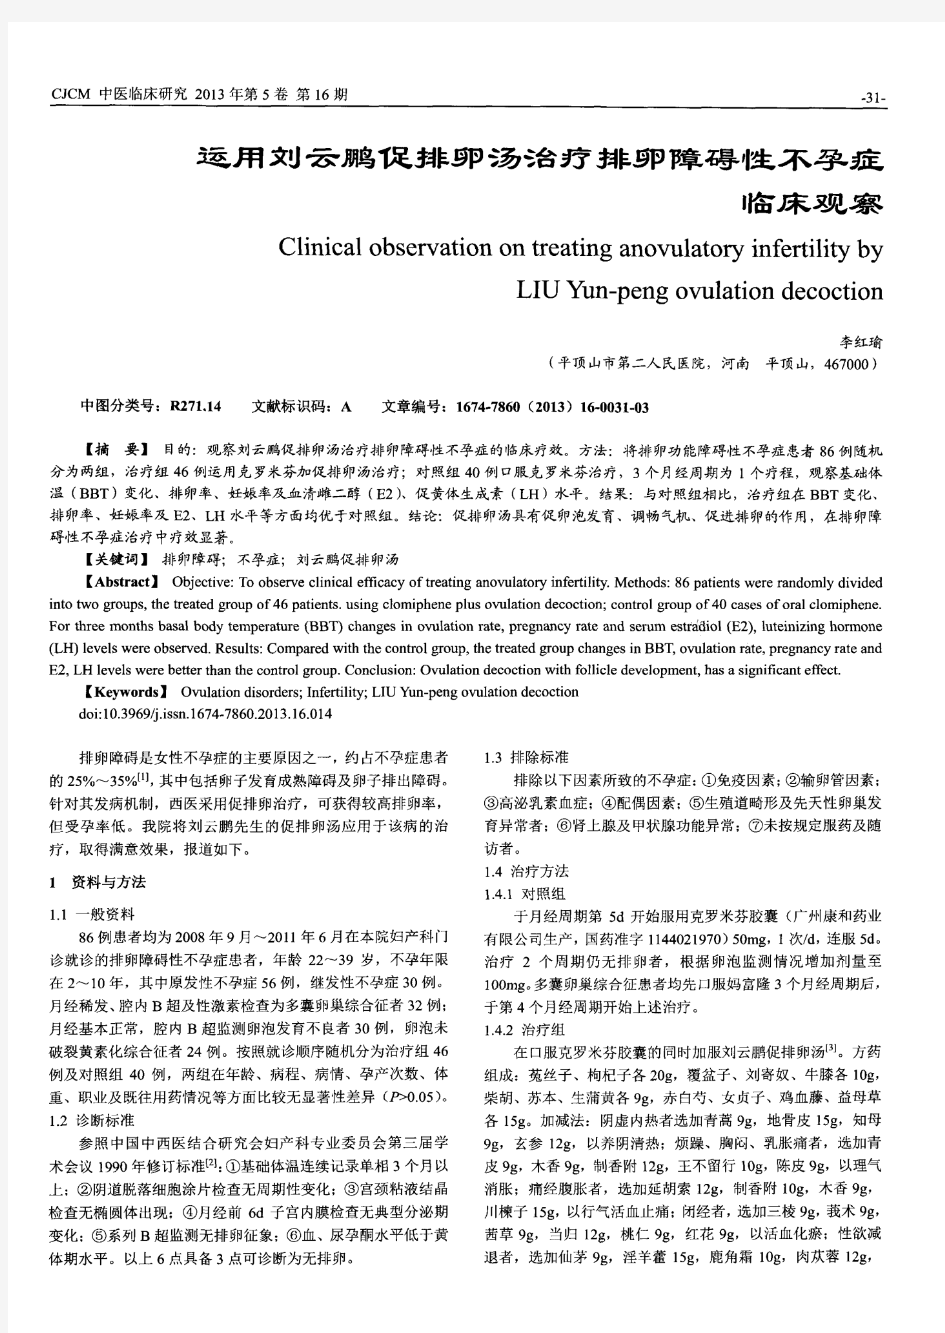 运用刘云鹏促排卵汤治疗排卵障碍性不孕症临床观察